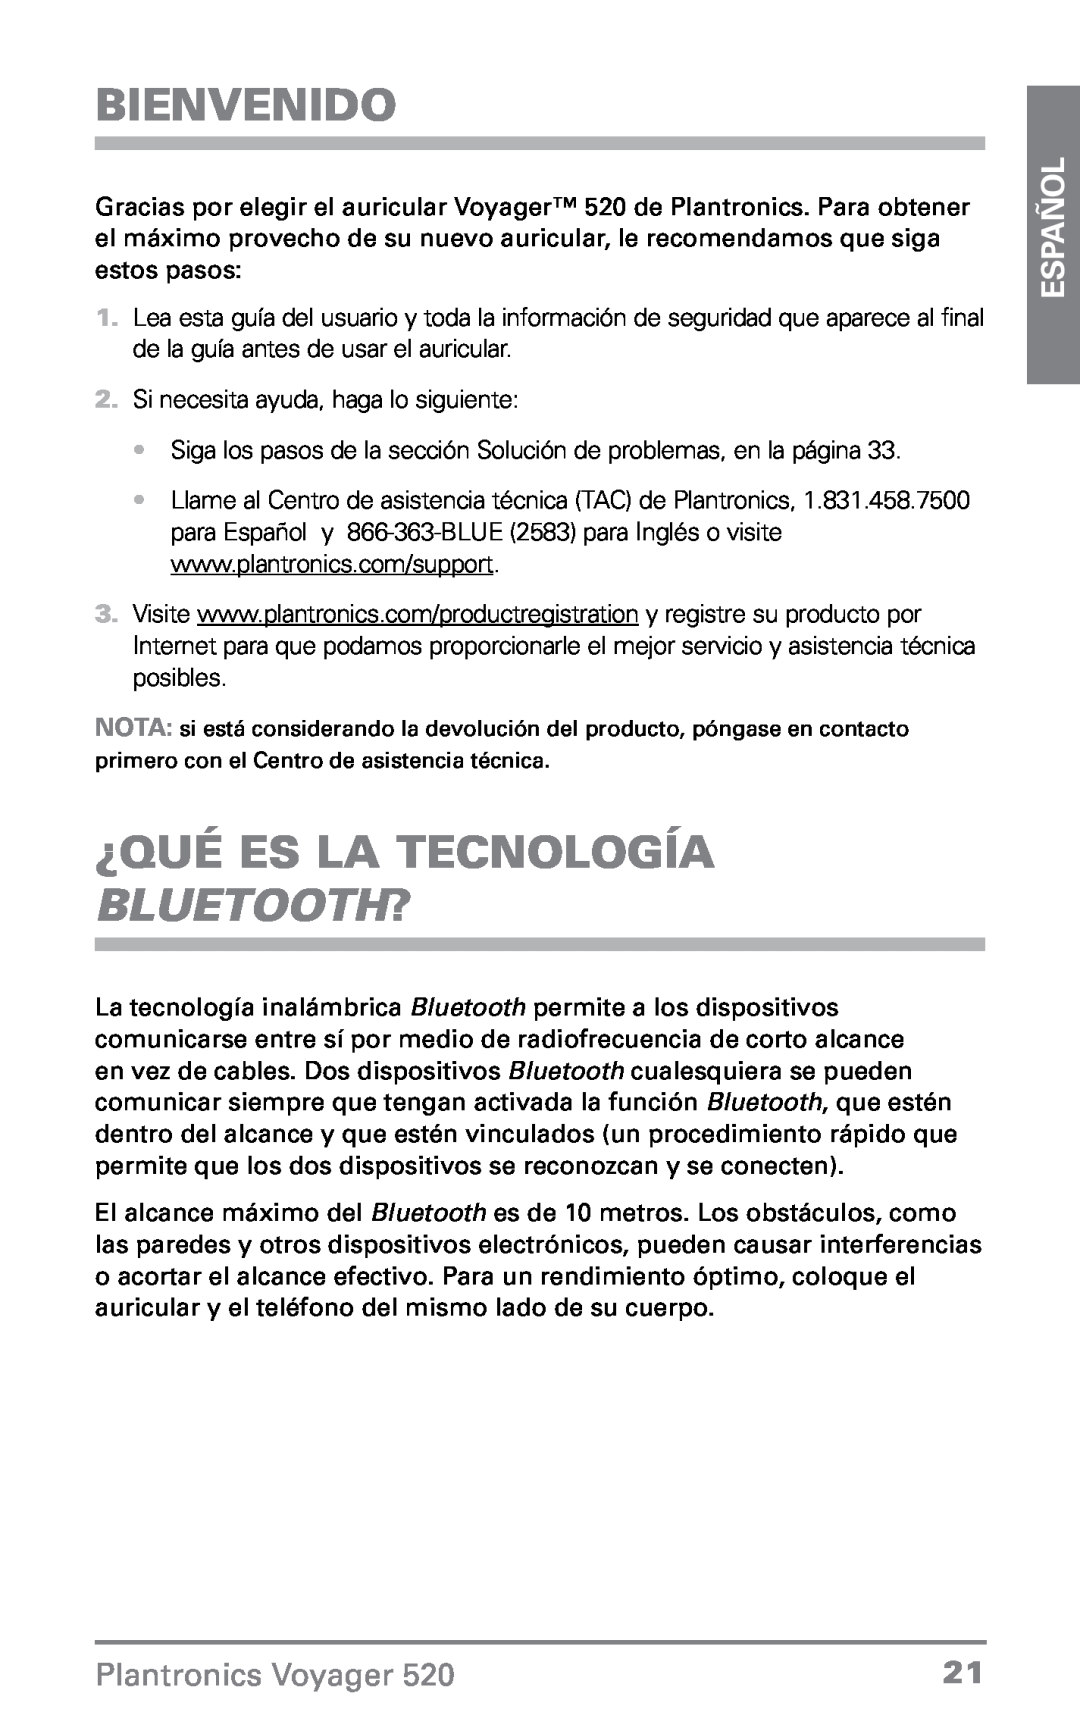 Plantronics 520 manual Bienvenido, ¿Qué es la tecnología Bluetooth?, Español, Plantronics Voyager 